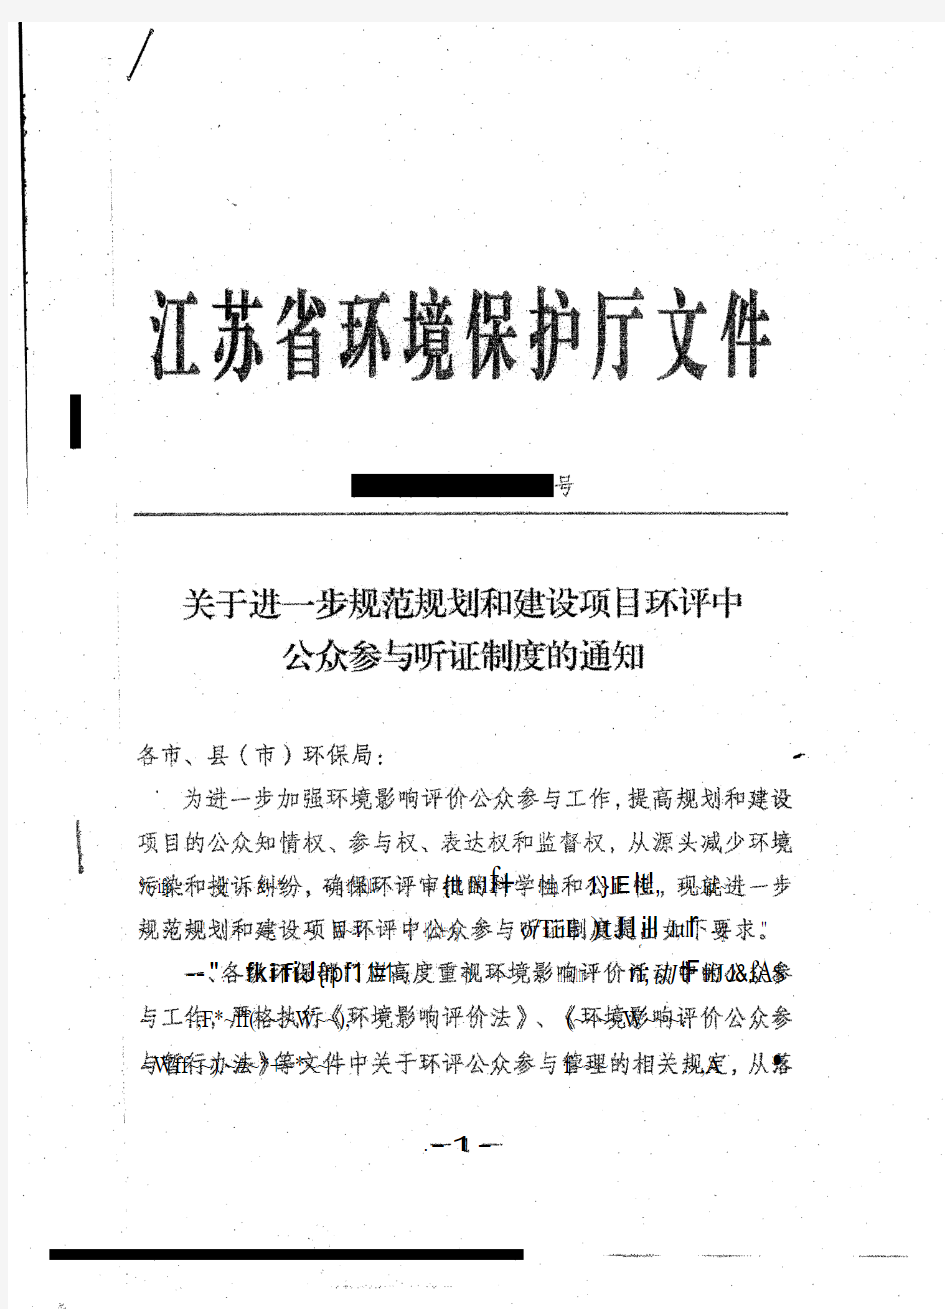 江苏省环境保护厅文件(关于进一步规范规划和建设项目环评中公众参与听证制度的通知)